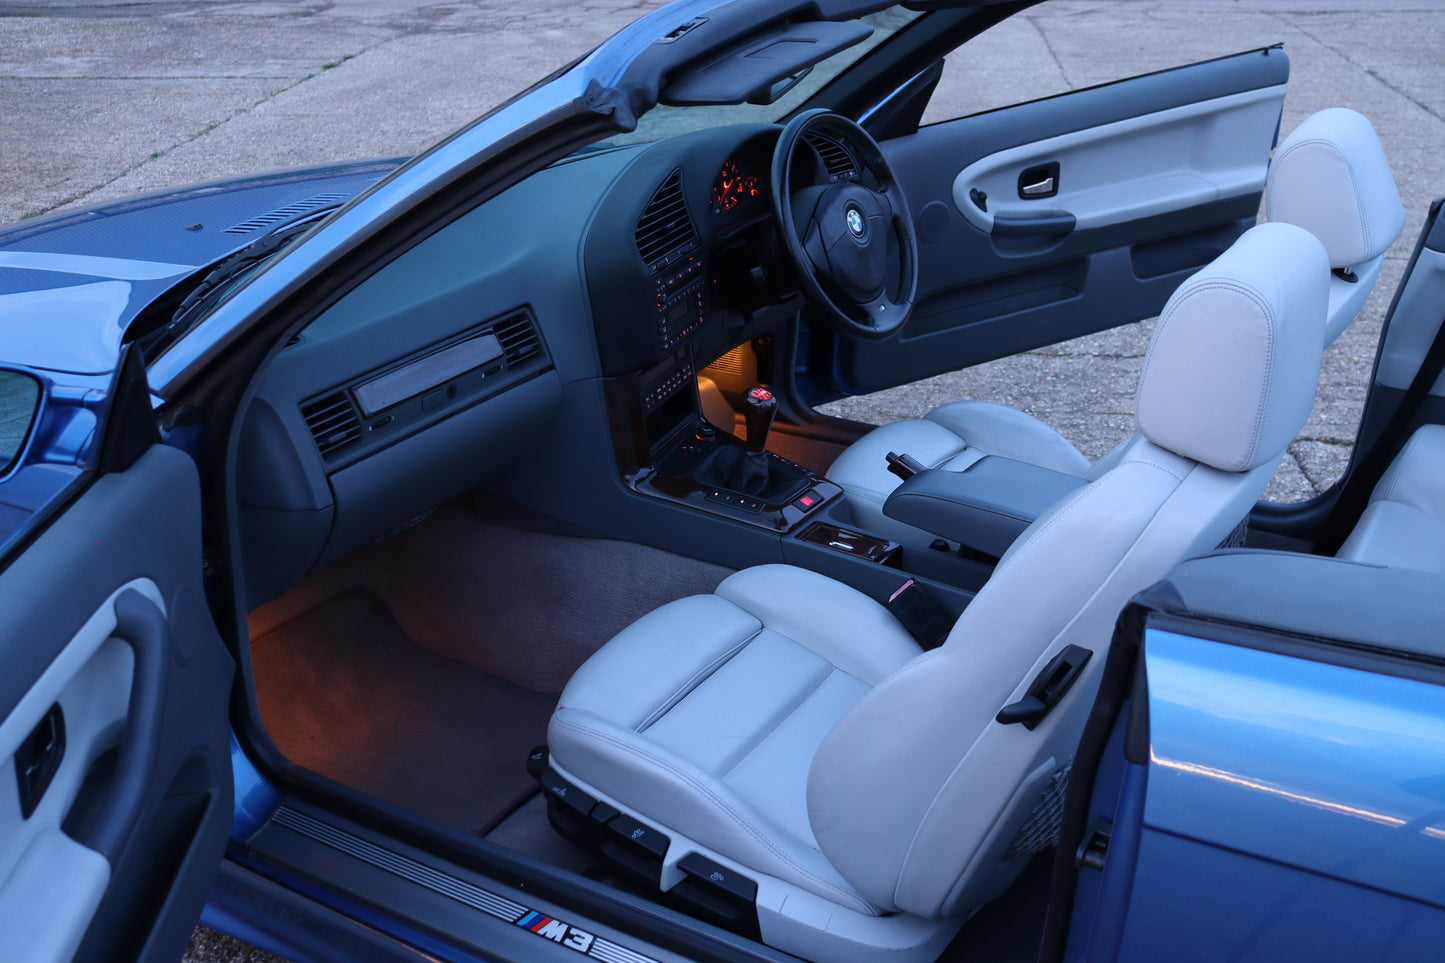 1997 BMW M3 Evo Convertible (E36)